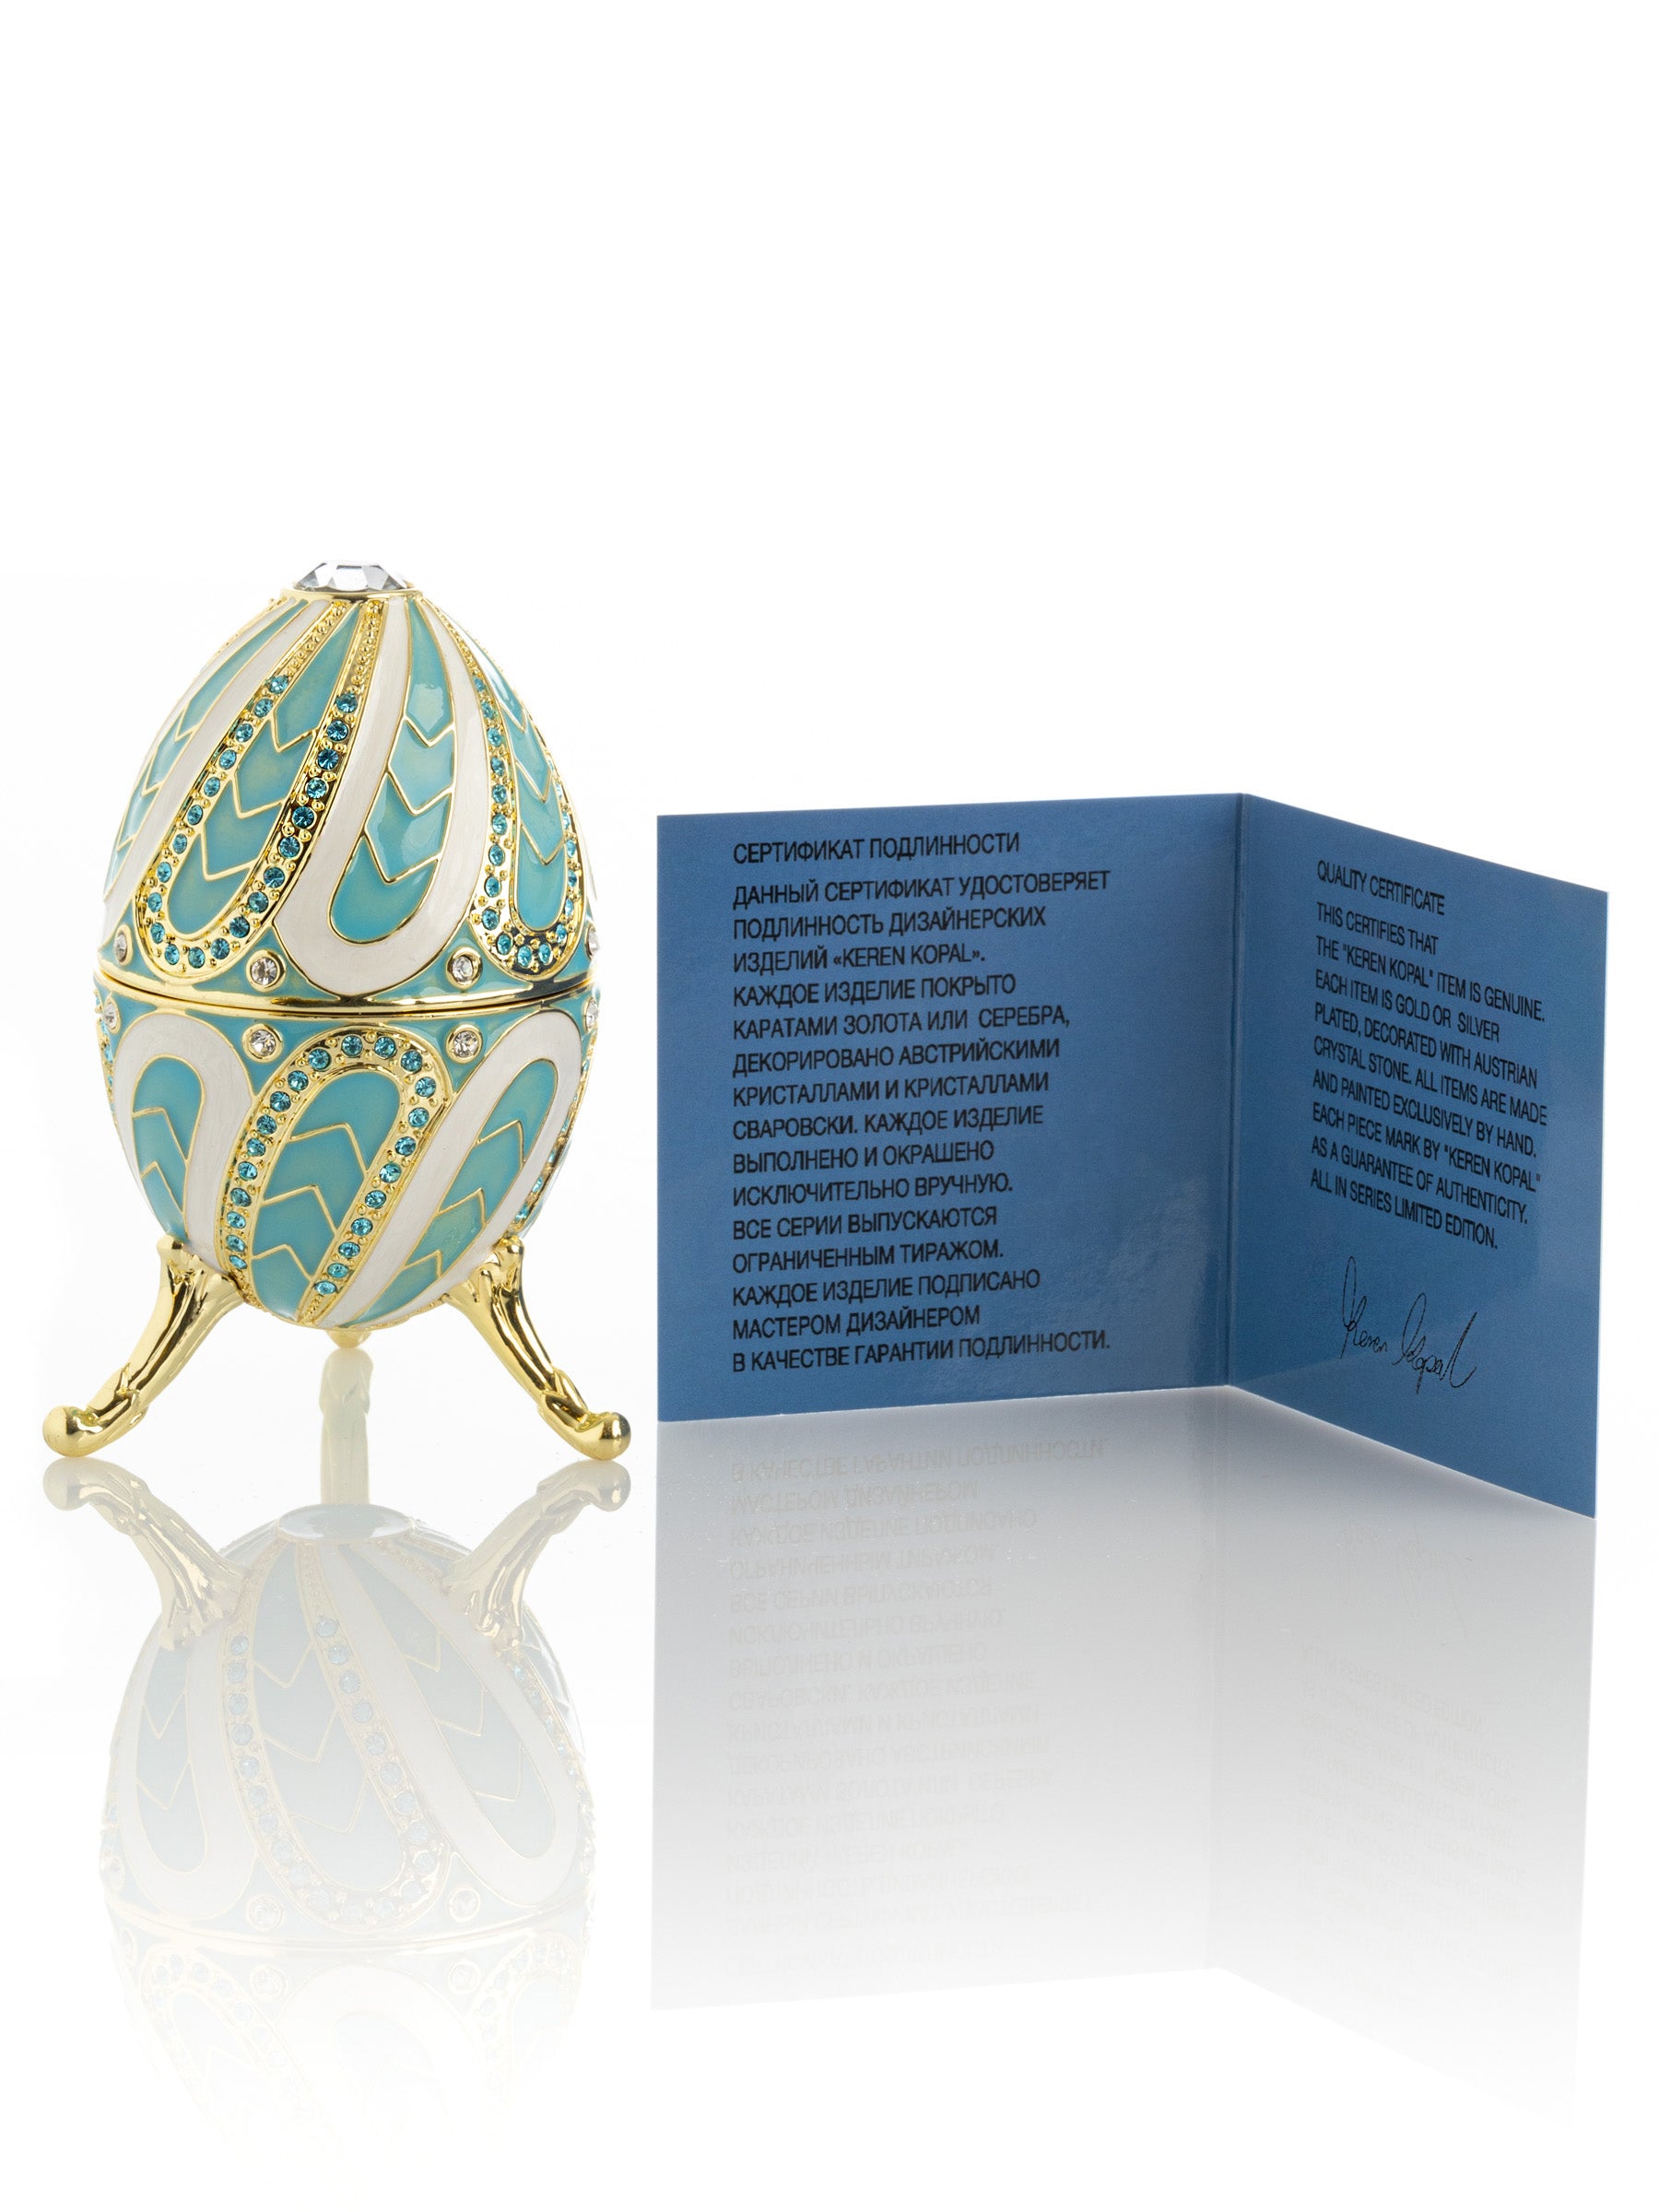 Boîte à musique turquoise Fur Elise de Beethoven Faberge Egg